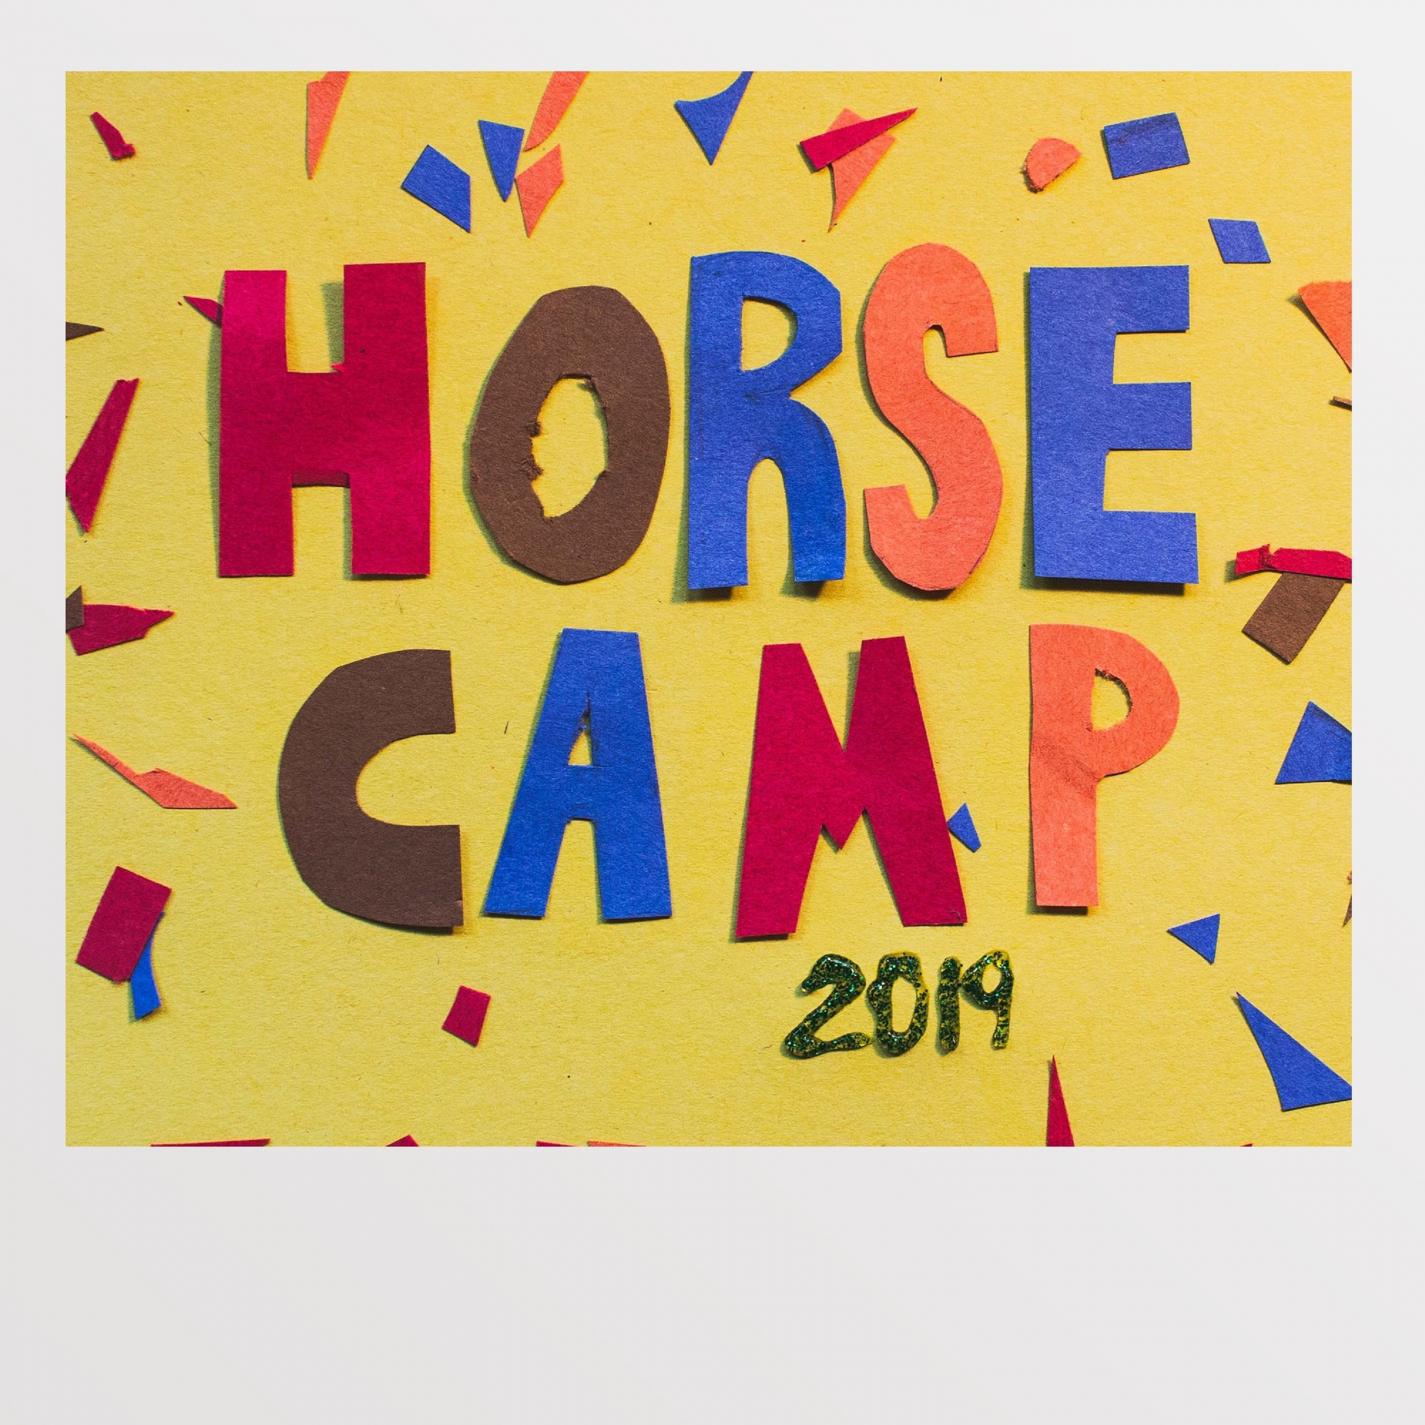 Horse Camp 2019